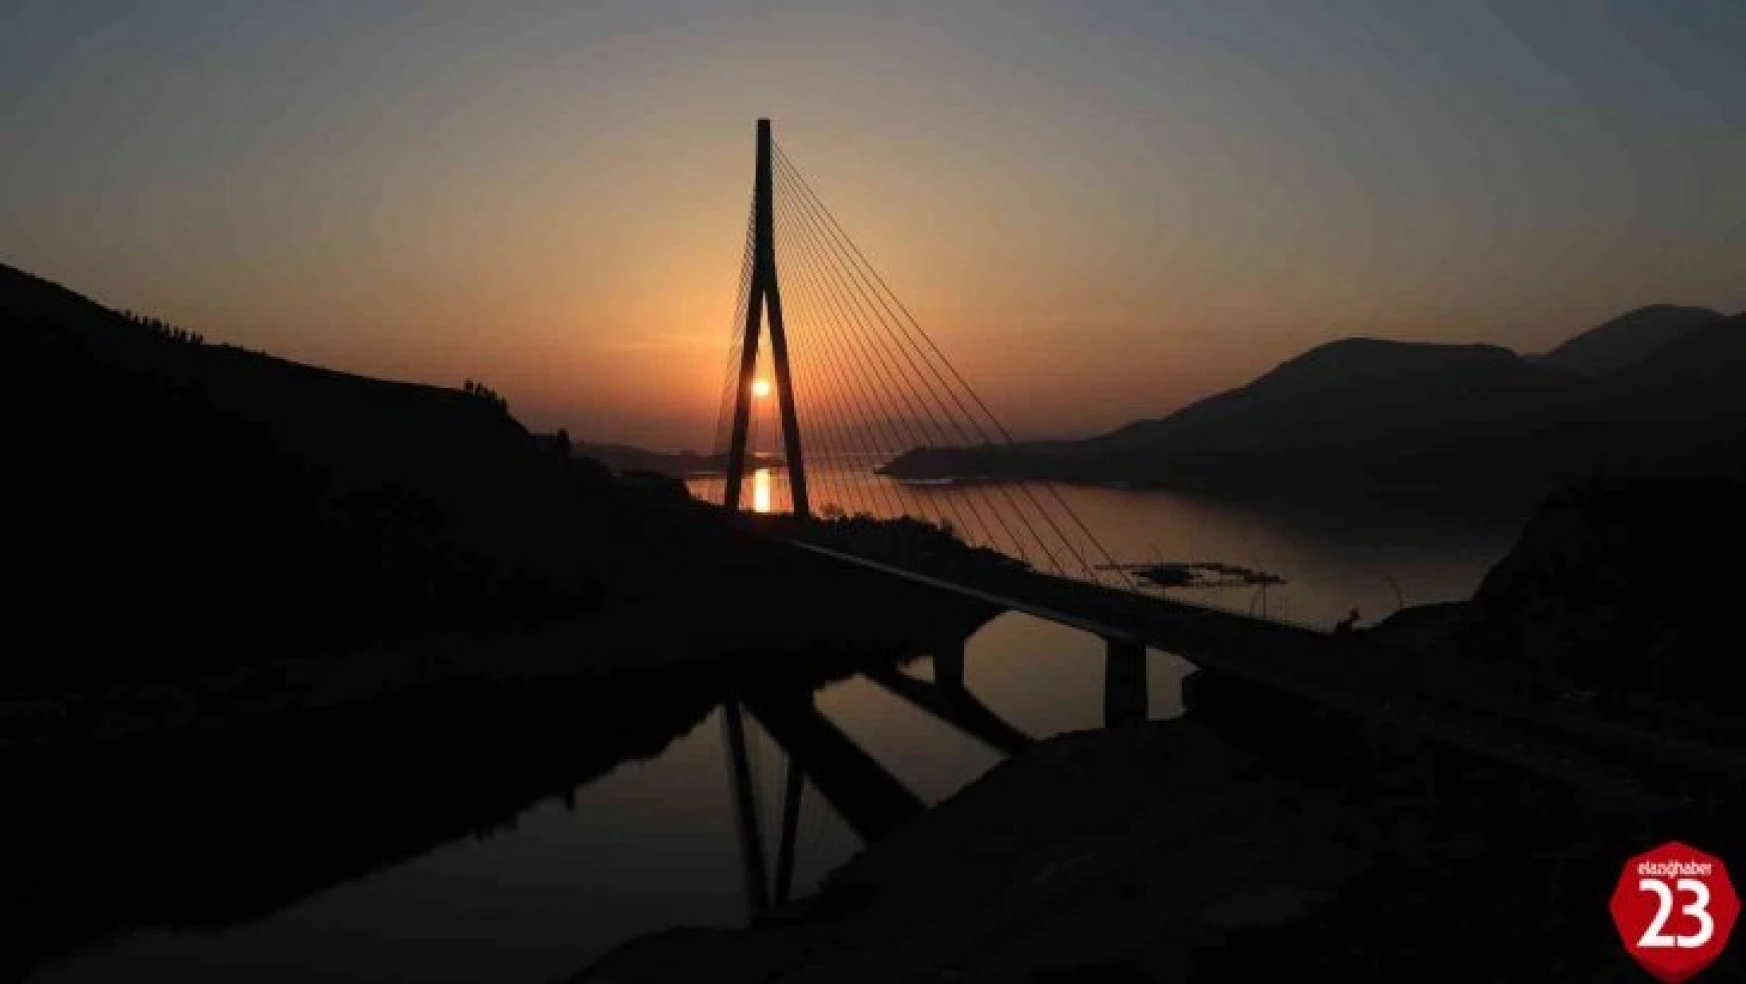 Kendi Alanında Dünya'da 4. Olan Kömürhan Köprüsünde Gün Batımı Güzelliği